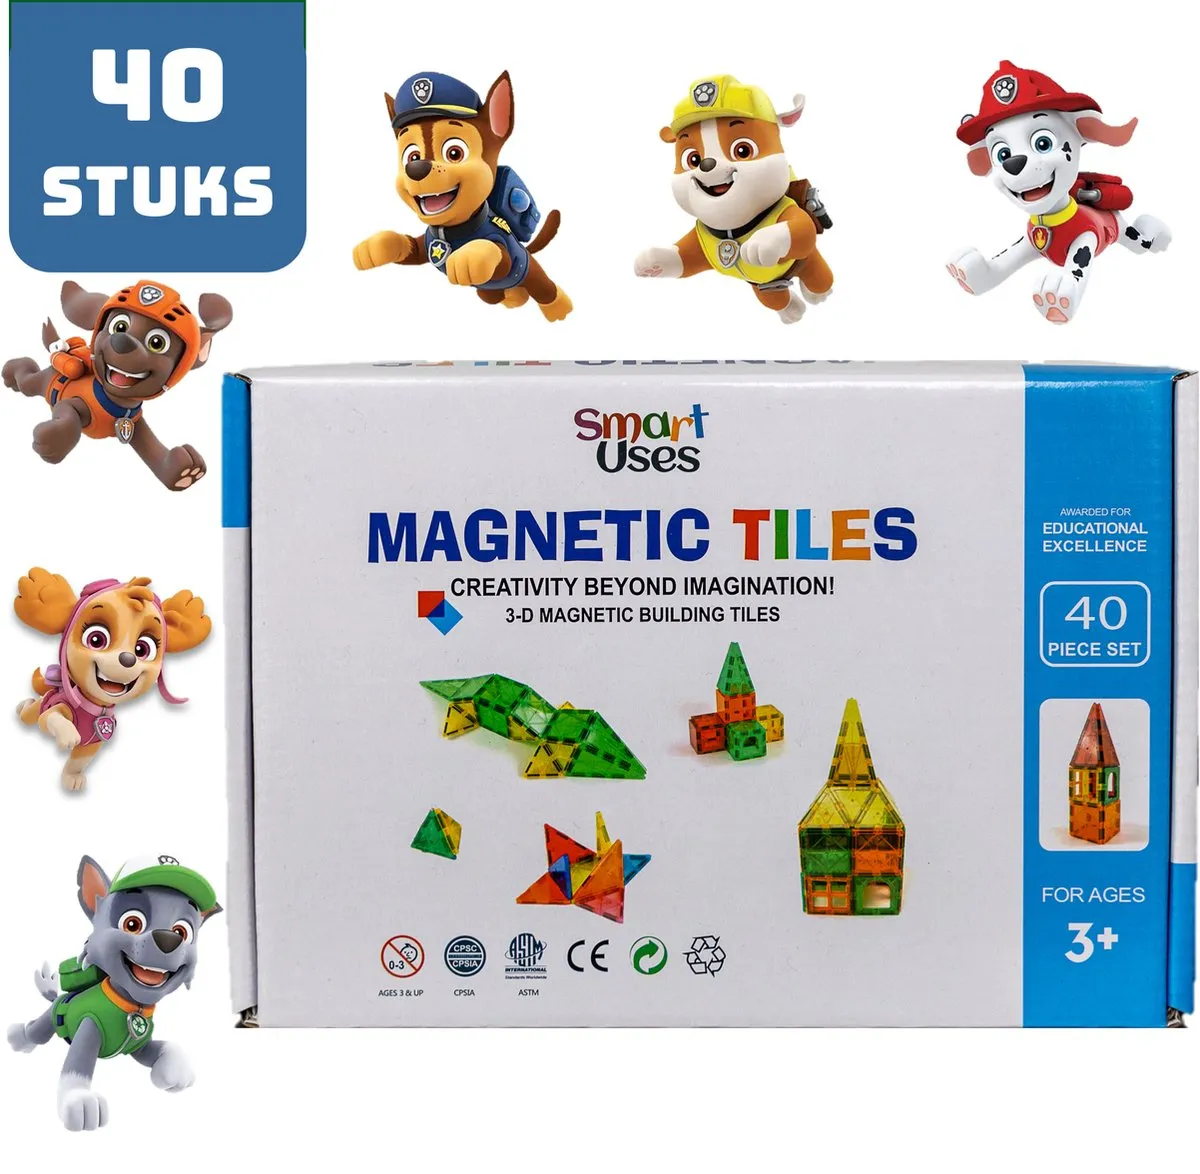 Magnetic Tiles - Magnaminds - Magna tiles - Magnetisch Speelgoed – 40 stuks - Constructie speelgoed - Magnetische tegels - Montessori speelgoed - Magnetic toys - Magnetische bouwstenen - Speelgoed 3-12 jaar - Magnetische Bouwblokken - Paw Patrol speelgoed